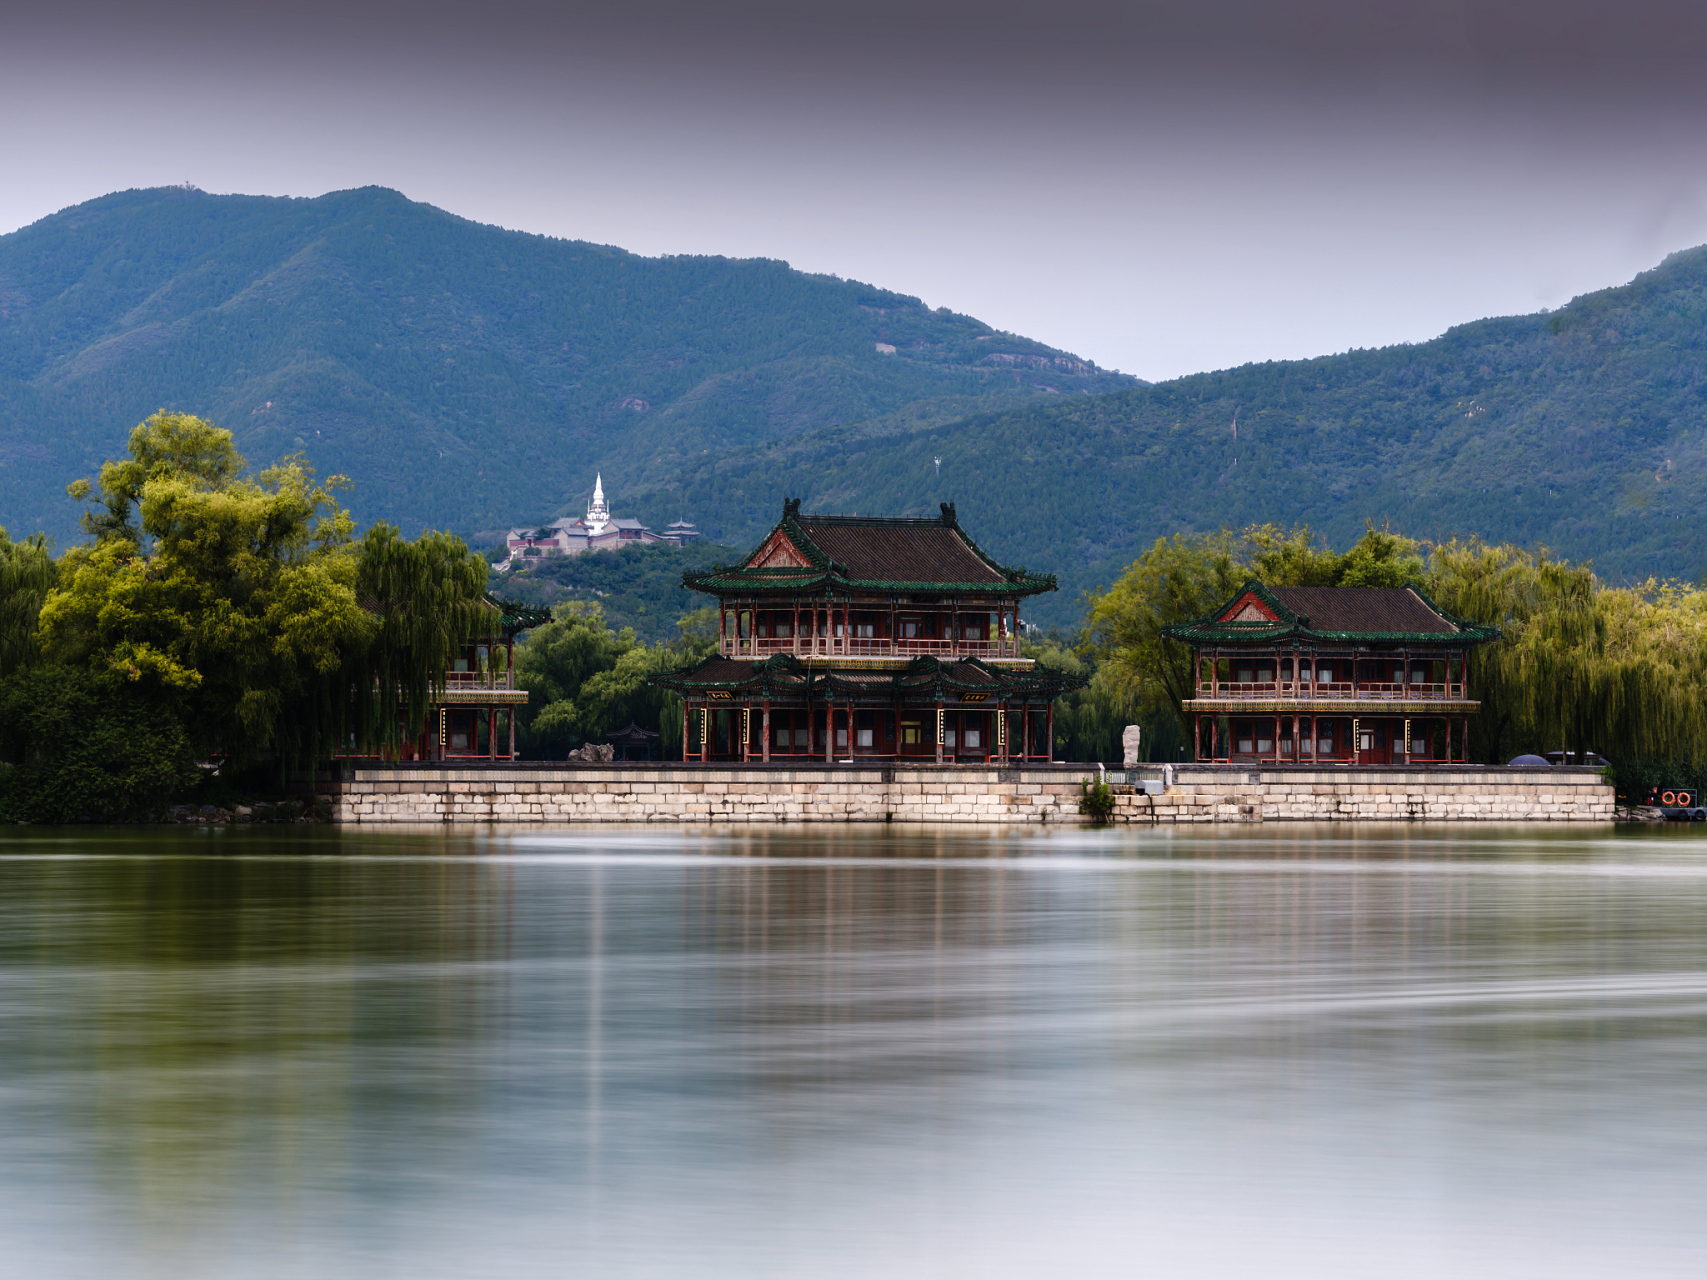 承德位于河北,拥有丰富的历史文化和自然风光,是清朝皇家园林的聚集地